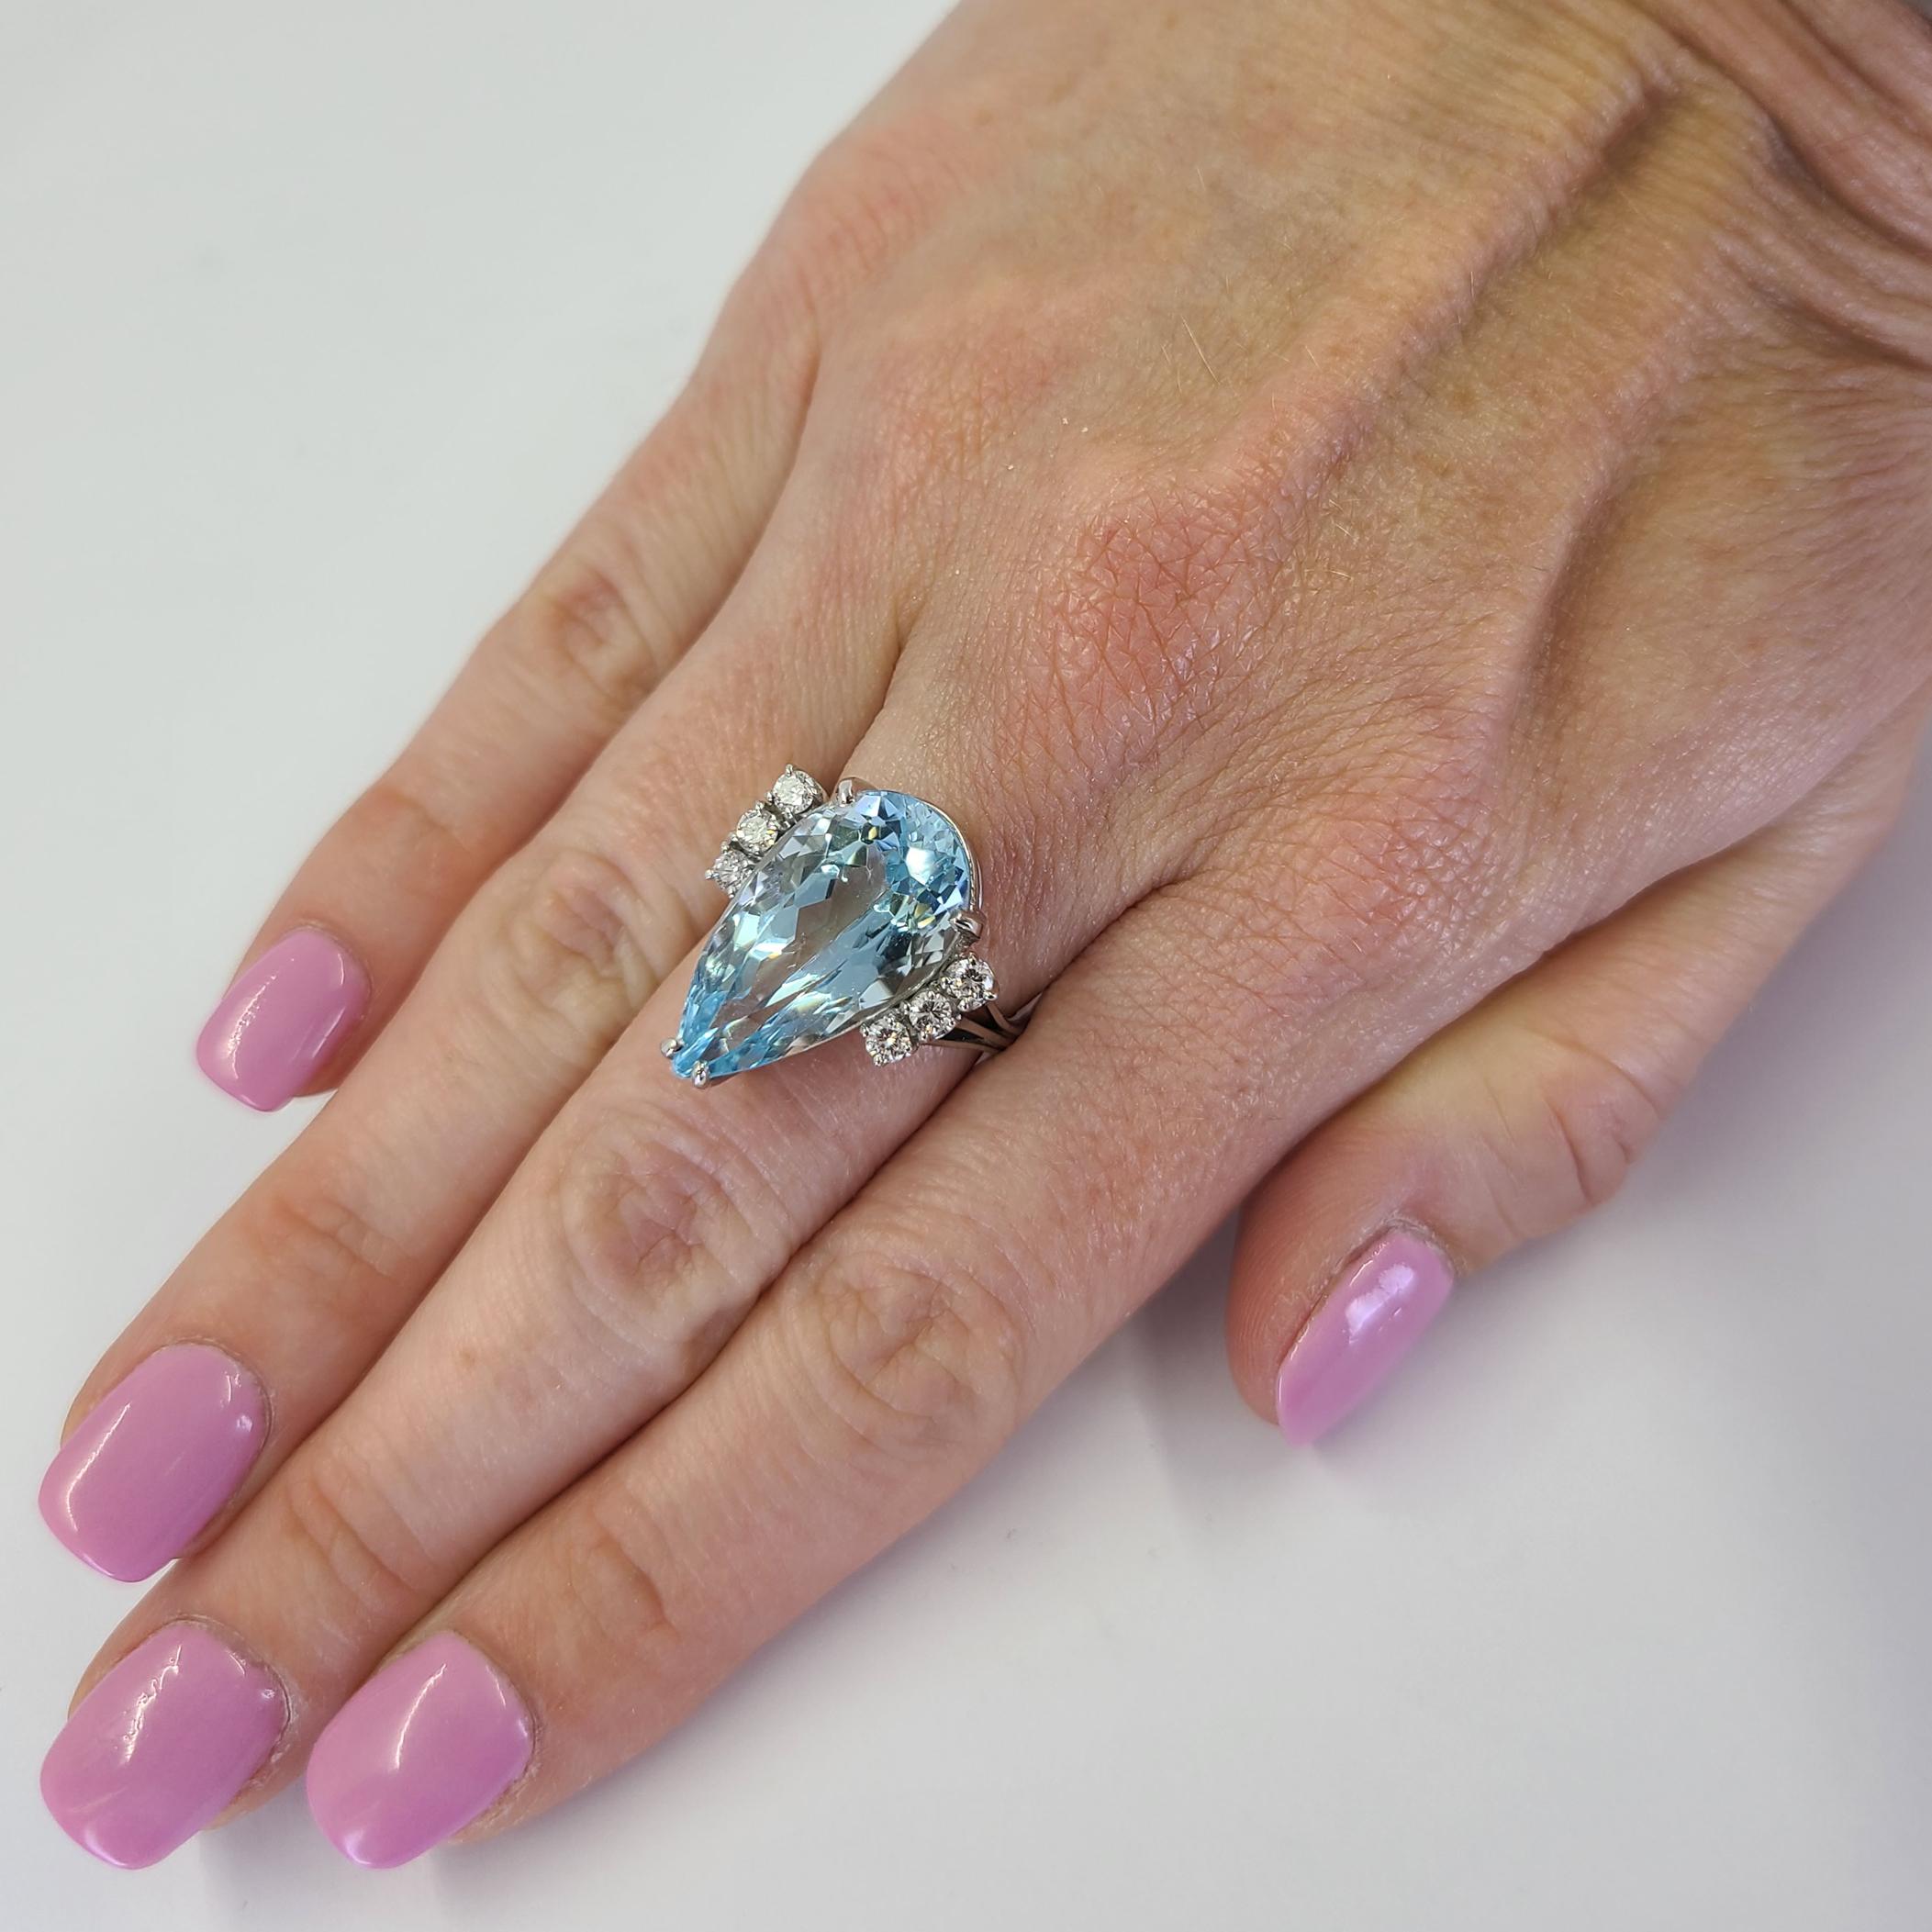 Mayor's 18 Karat Weißgold Ring mit einem 10 Karat Birnenschliff Aquamarin akzentuiert durch 6 runde Diamanten von VS Reinheit & G Farbe insgesamt 0,50 Karat. Fingergröße 5; Der Kauf beinhaltet einen Größenservice. Das fertige Gewicht beträgt 7,2